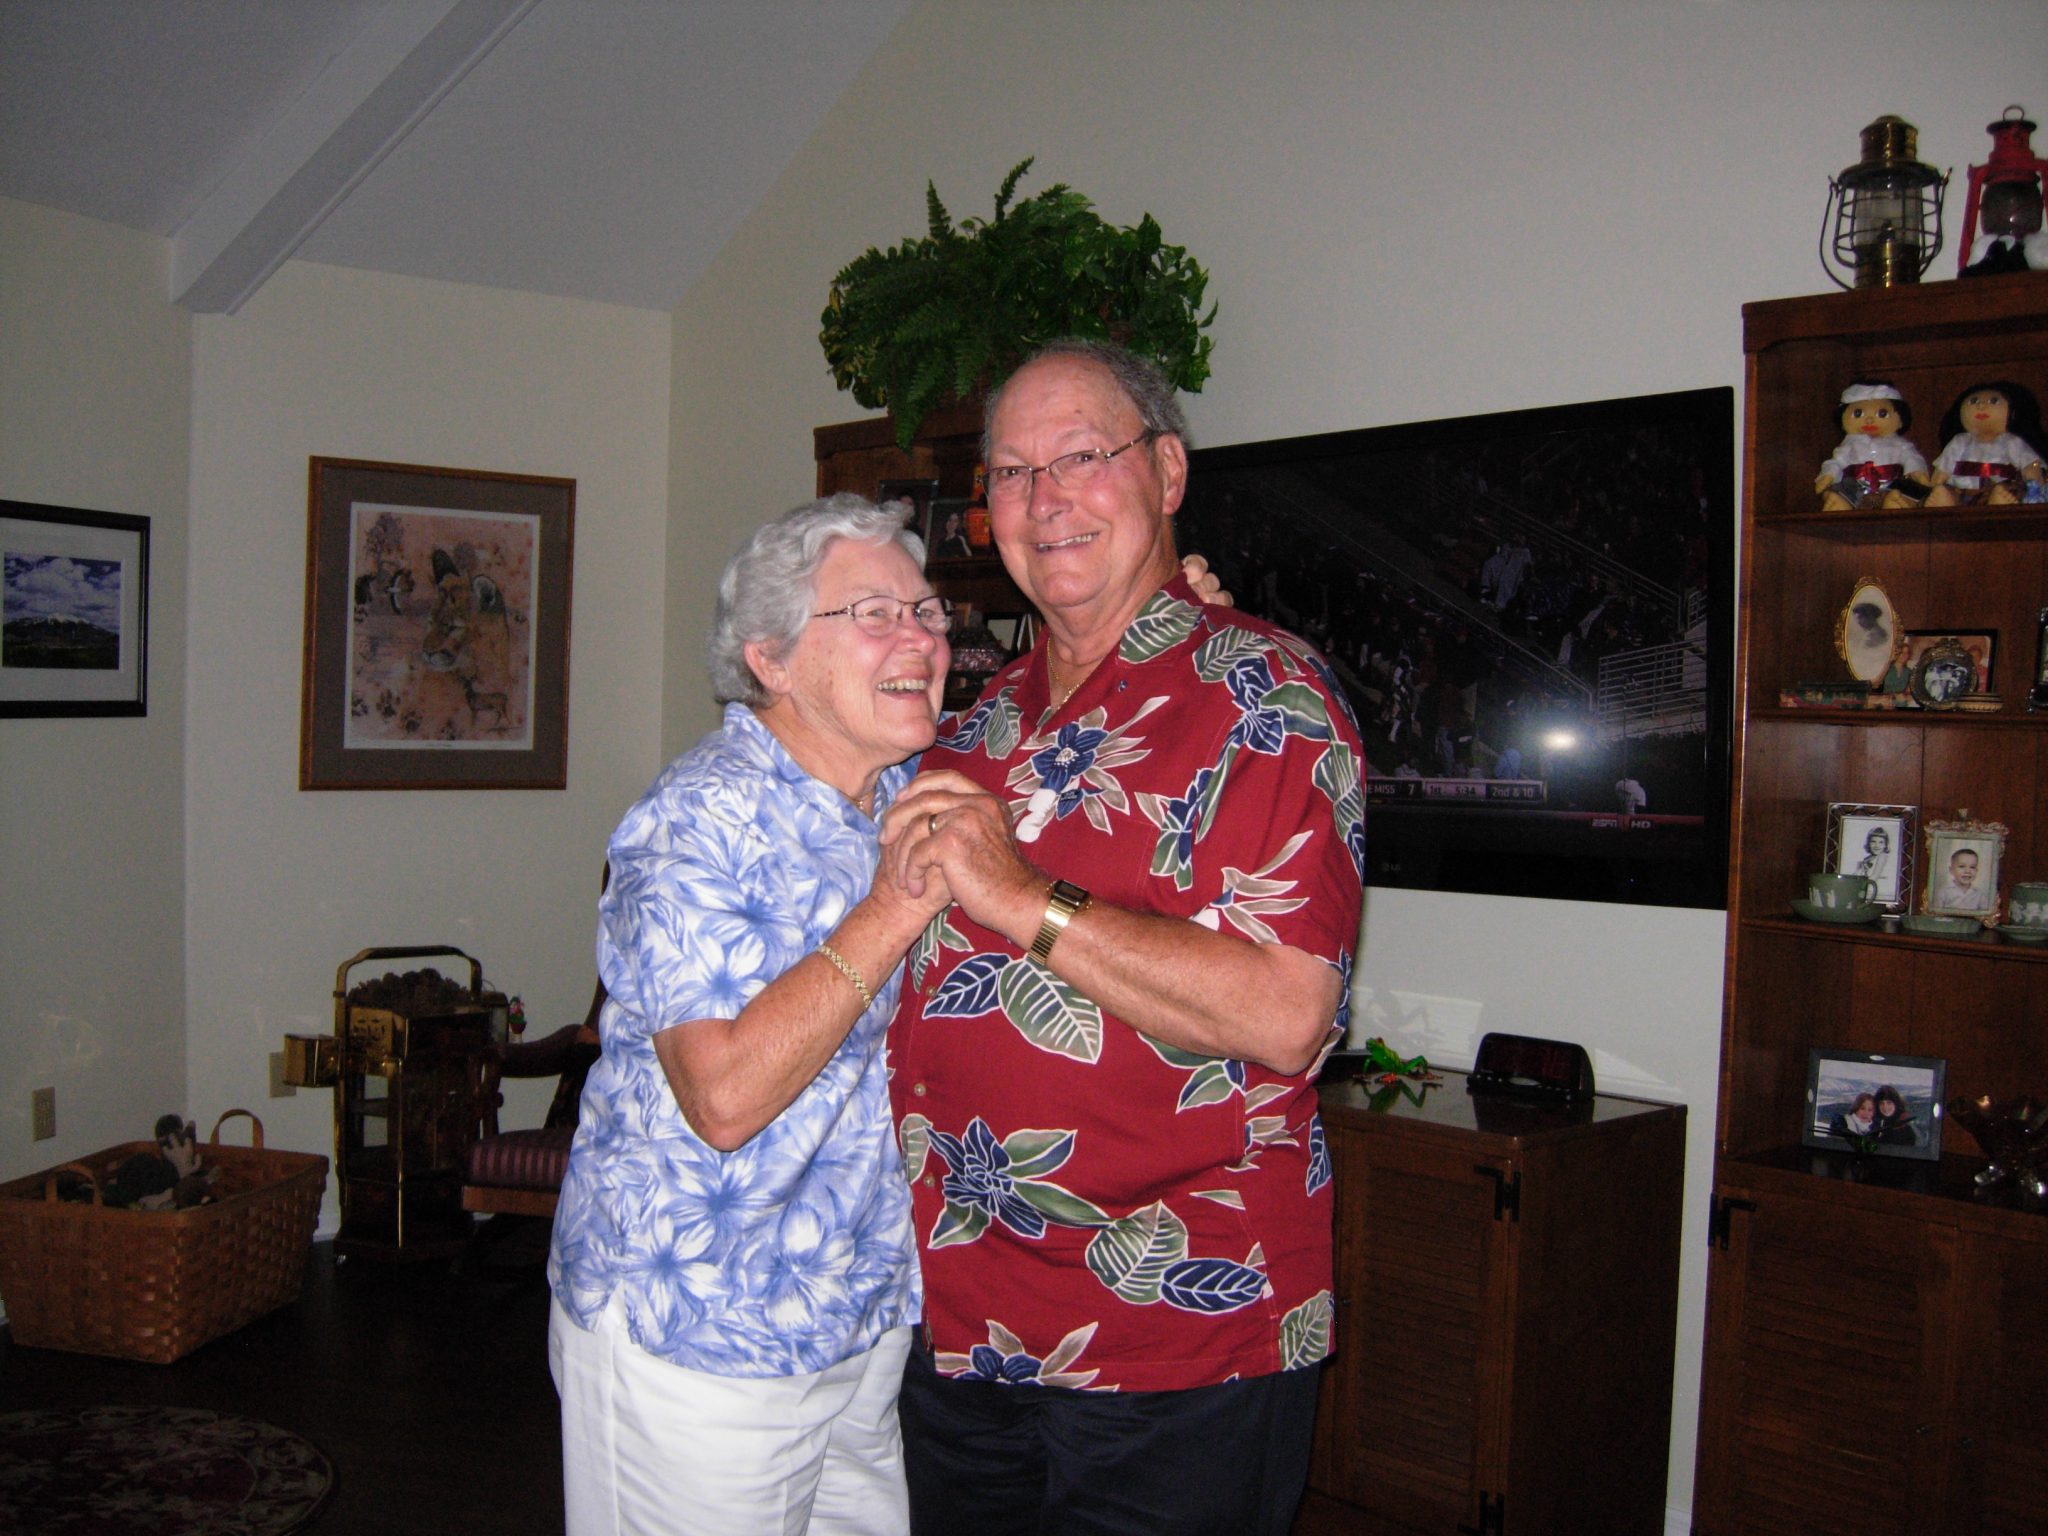 Gramps and Grandma enjoying life together!